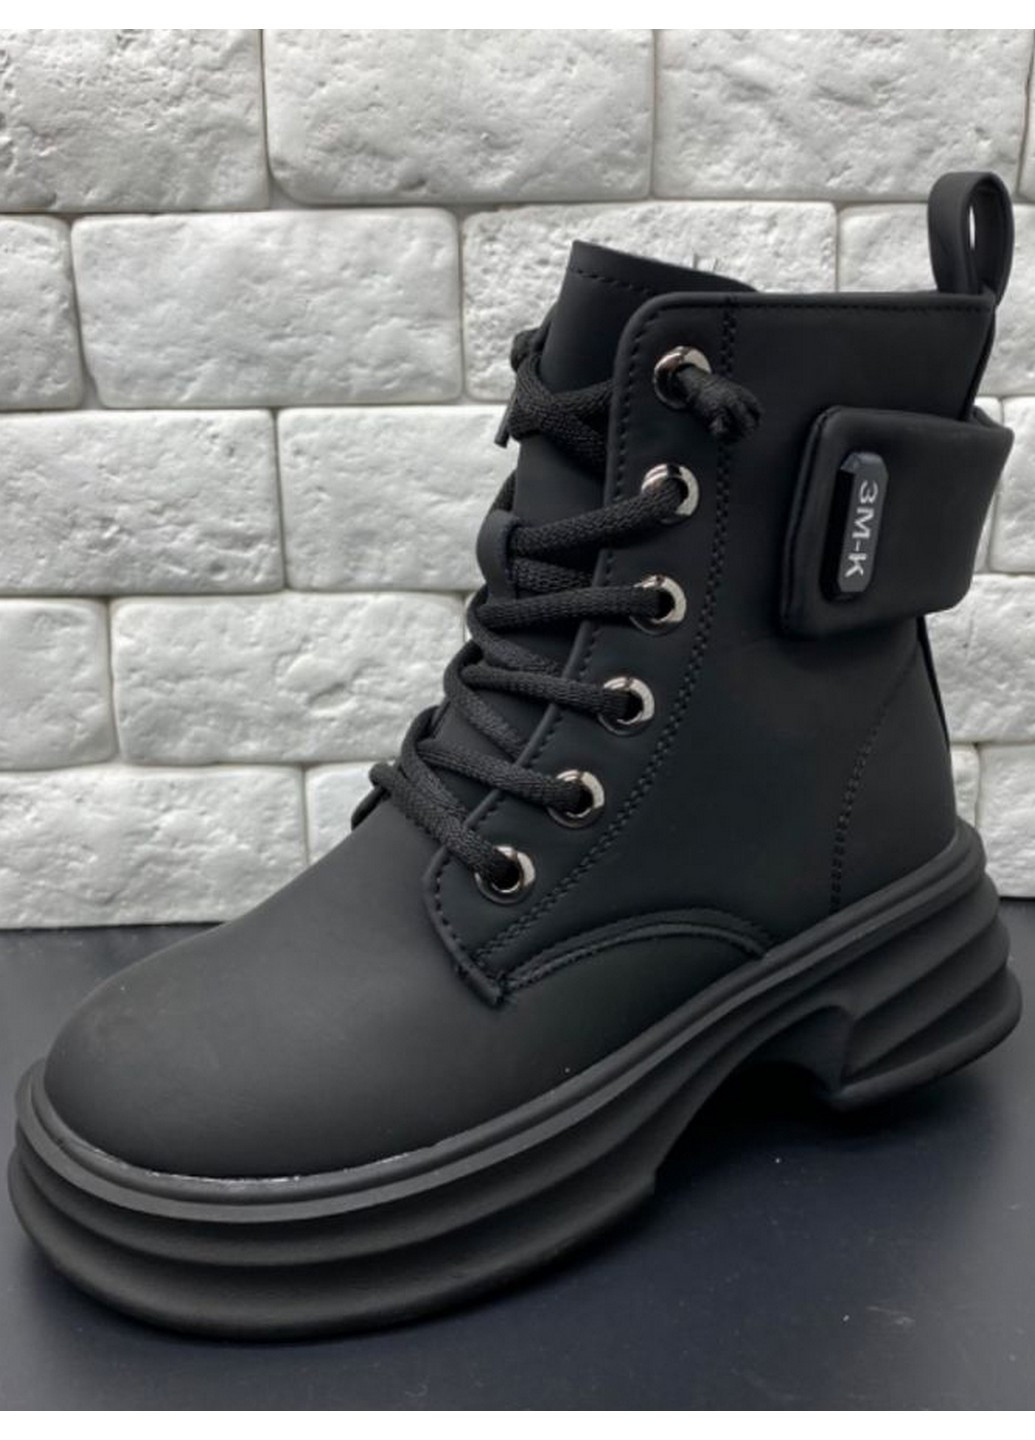 Черные зимние зимние ботинки на овчине cn40378-0 Jong Golf